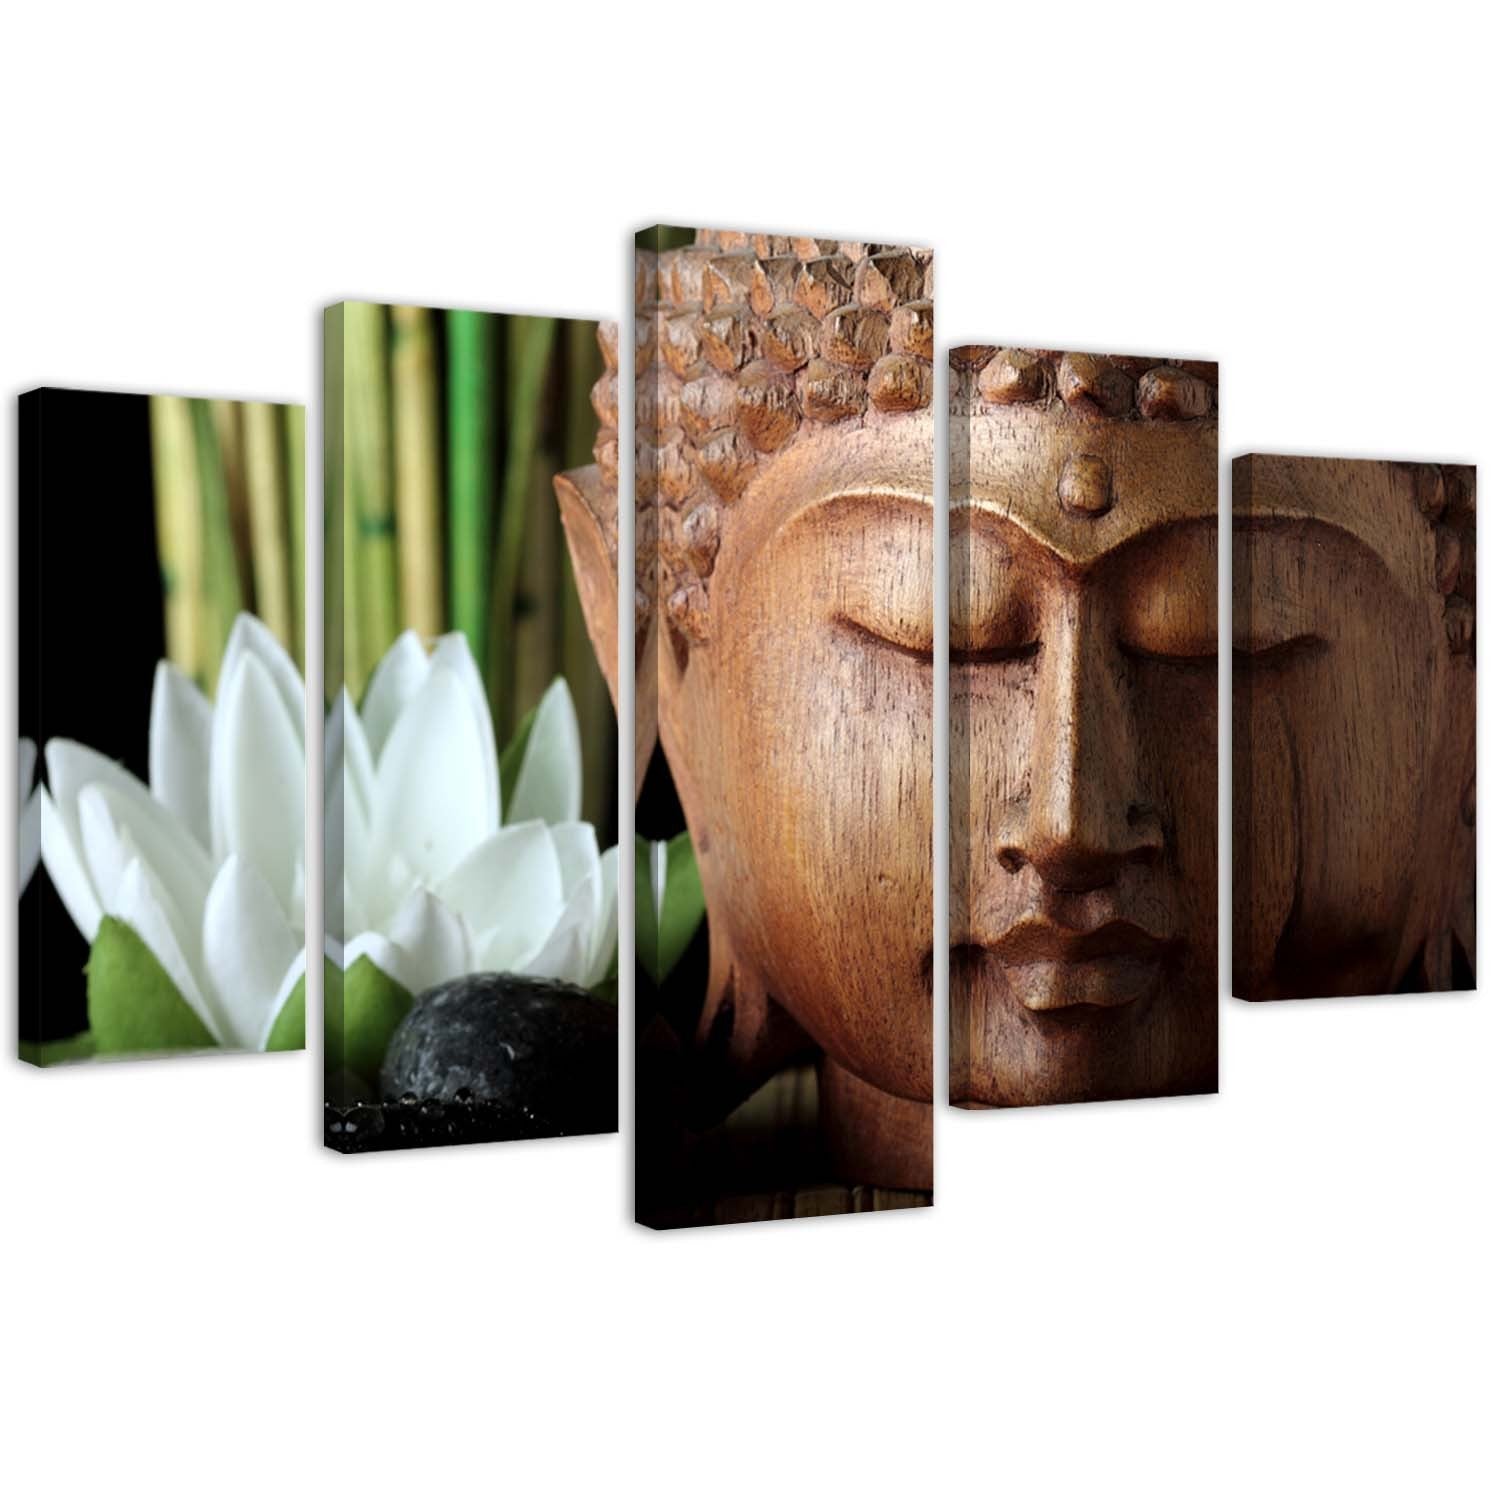 Penkių elementų deko plokštės ant drobės vaizdas, Buda ir balta gėlė